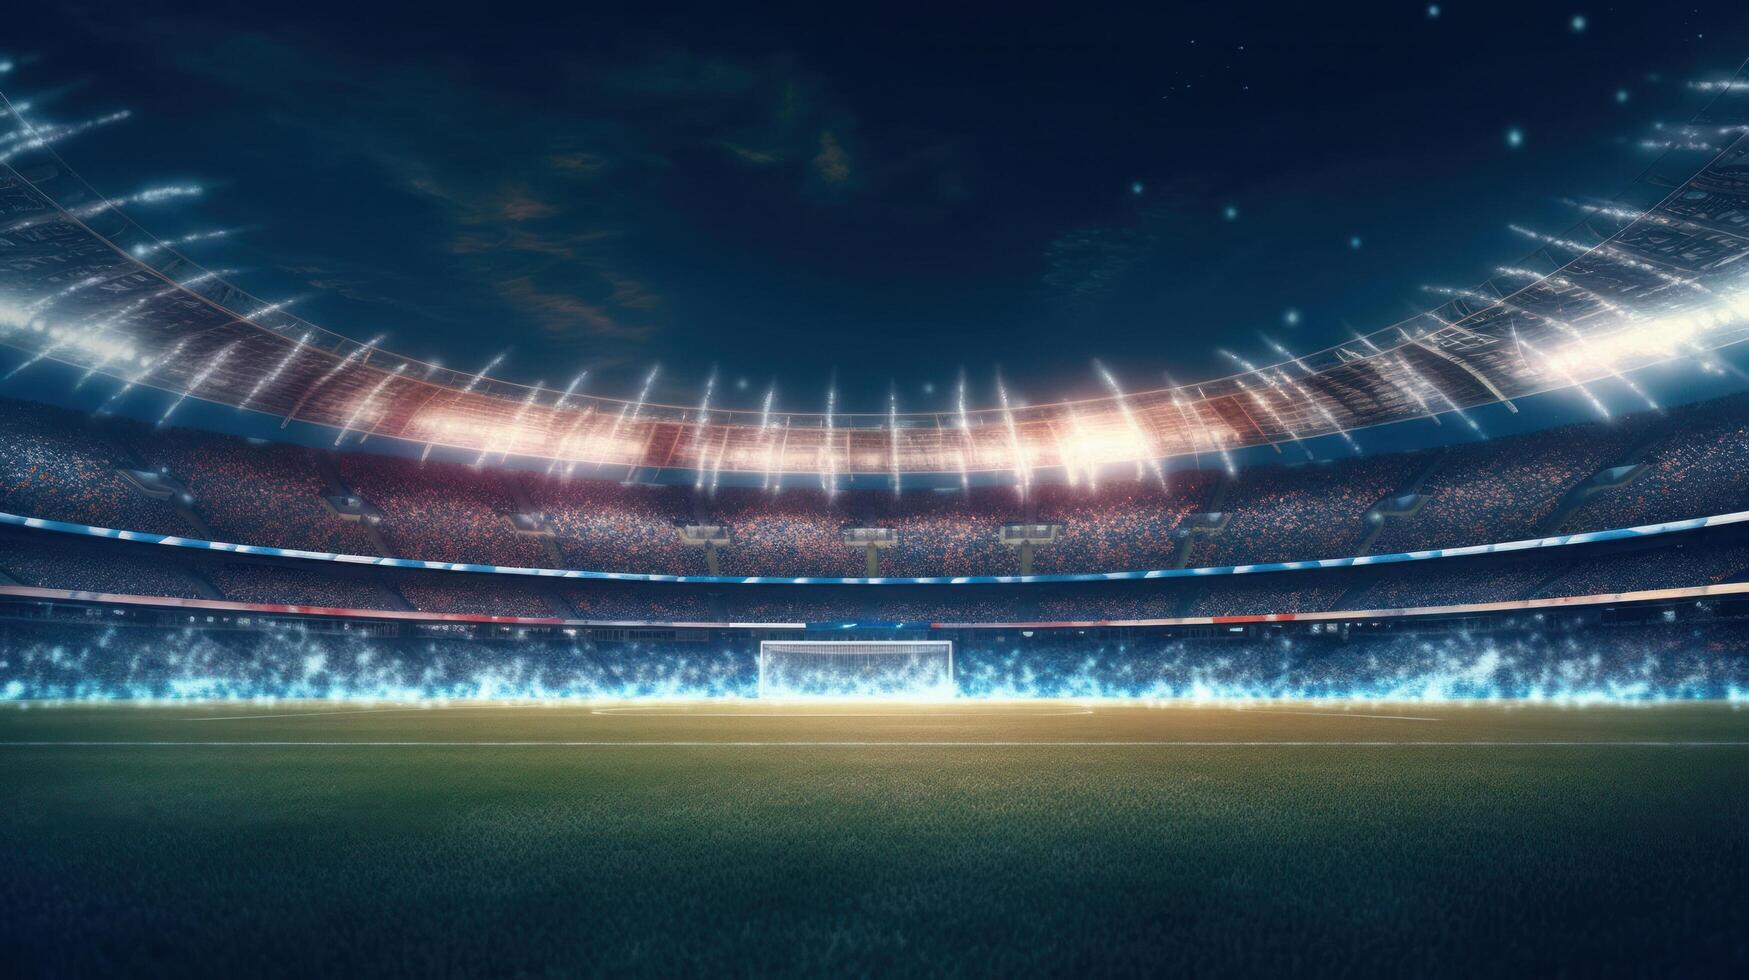 Football stadium at night. Illustration photo